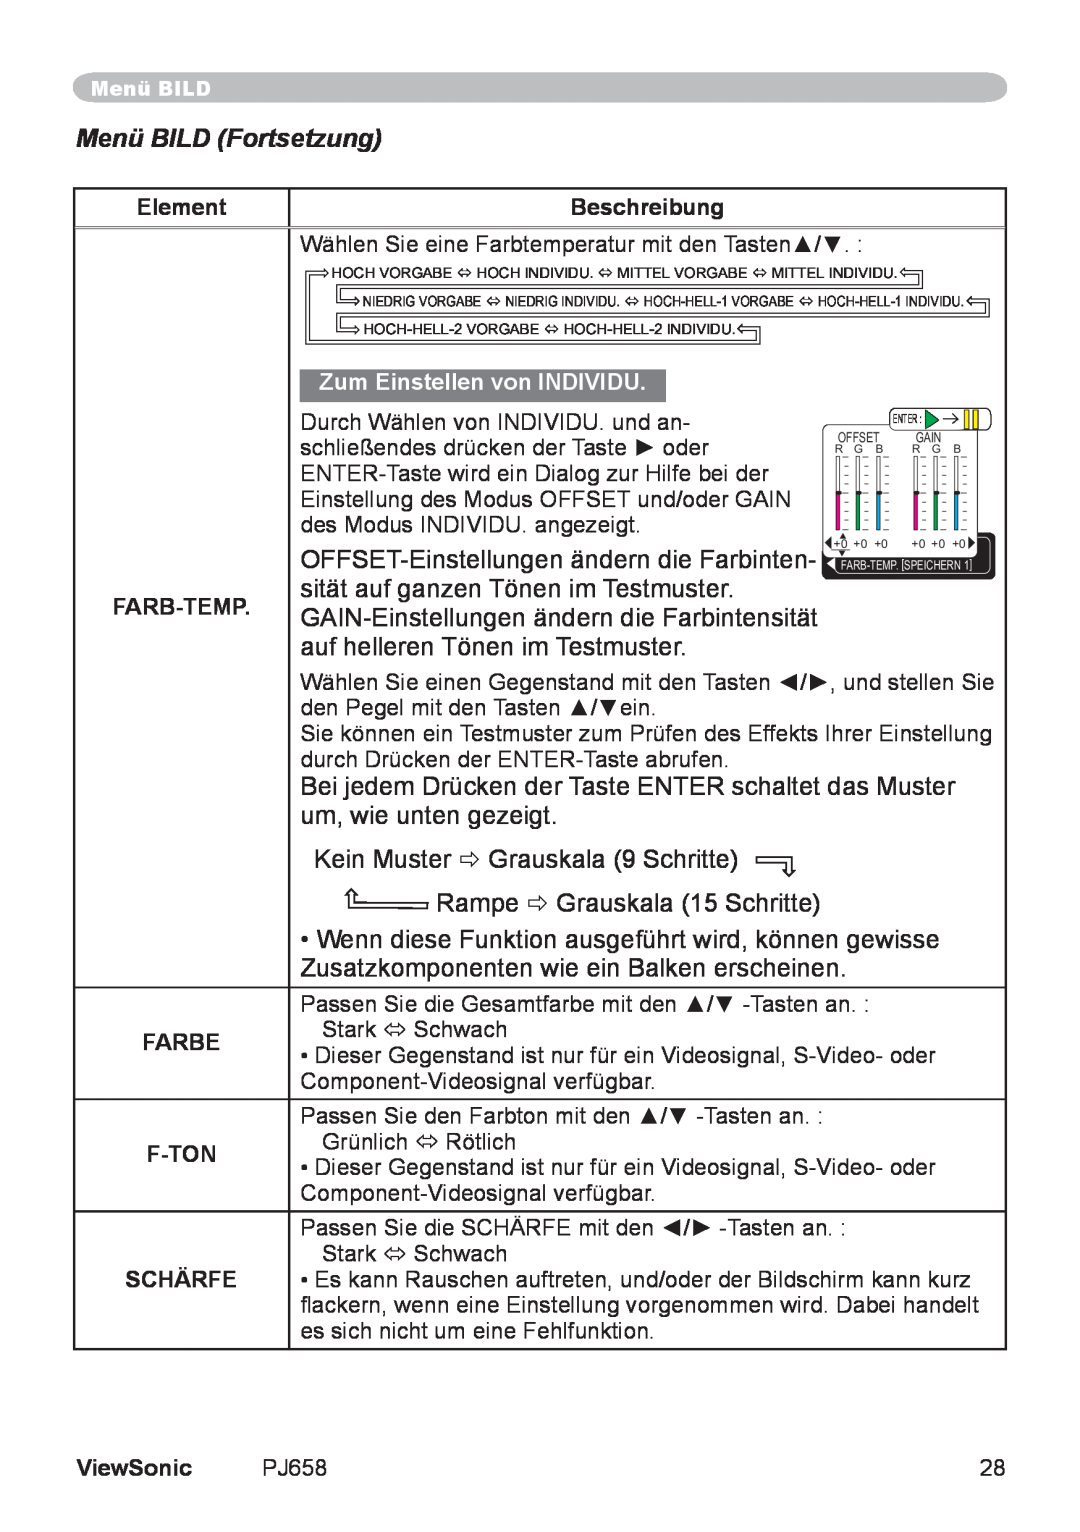 ViewSonic VS11361 manual Menü BILD Fortsetzung, Element, Beschreibung, Zum Einstellen von INDIVIDU, Farb-Temp, Farbe, F-Ton 